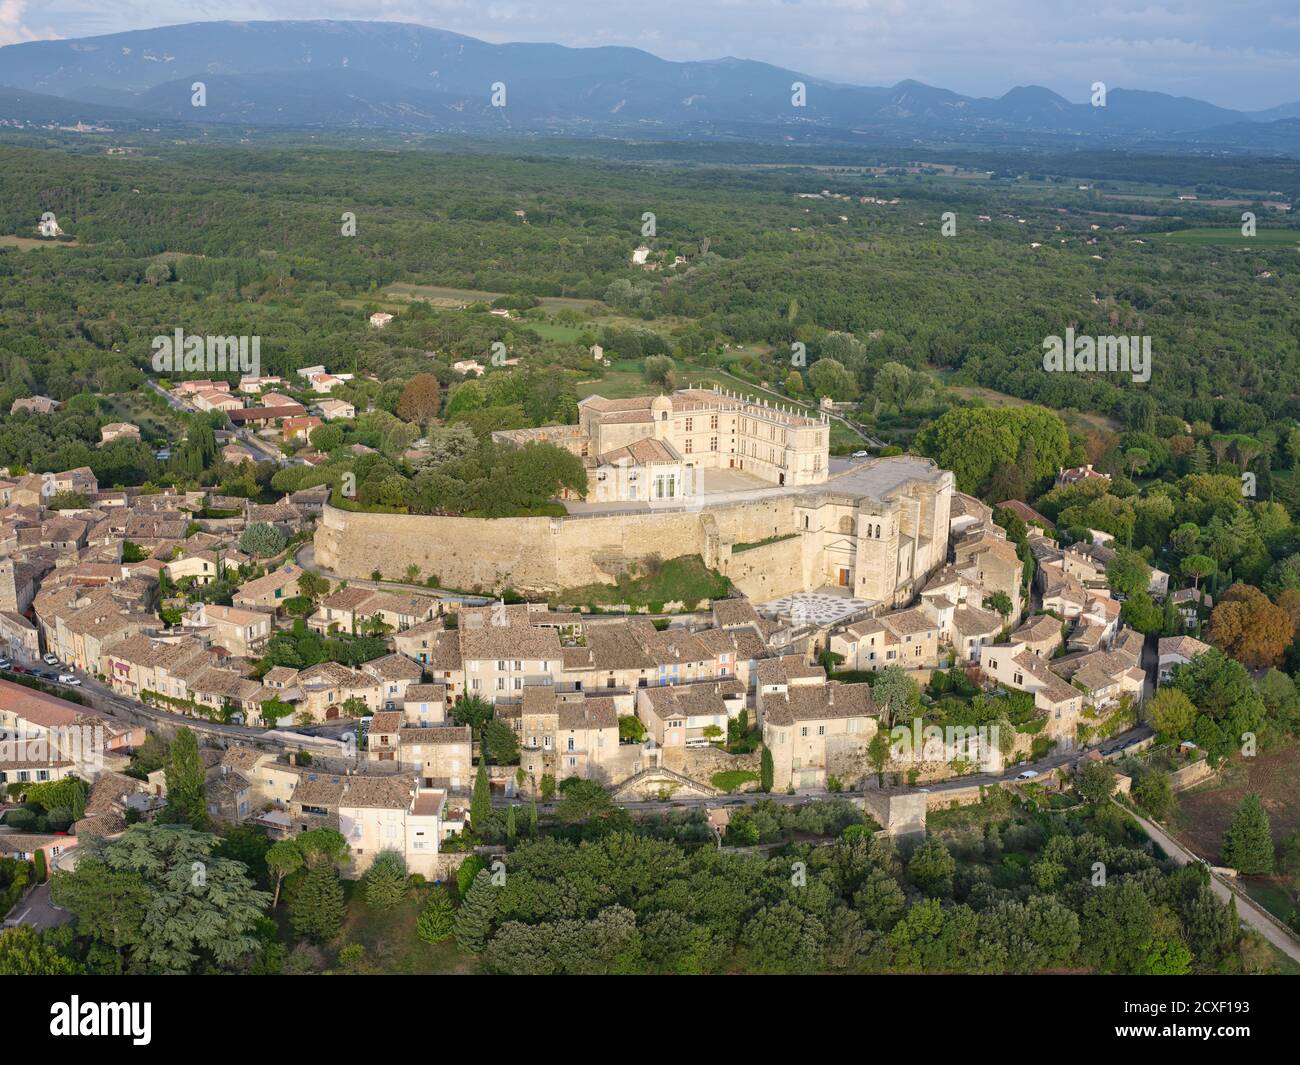 LUFTAUFNAHME. Mittelalterliche Burg auf einem felsigen Hügel, mit Blick auf das alte Dorf gebaut. Schloss Grignan, Drome, Auvergne-Rhône-Alpes, Frankreich. Stockfoto